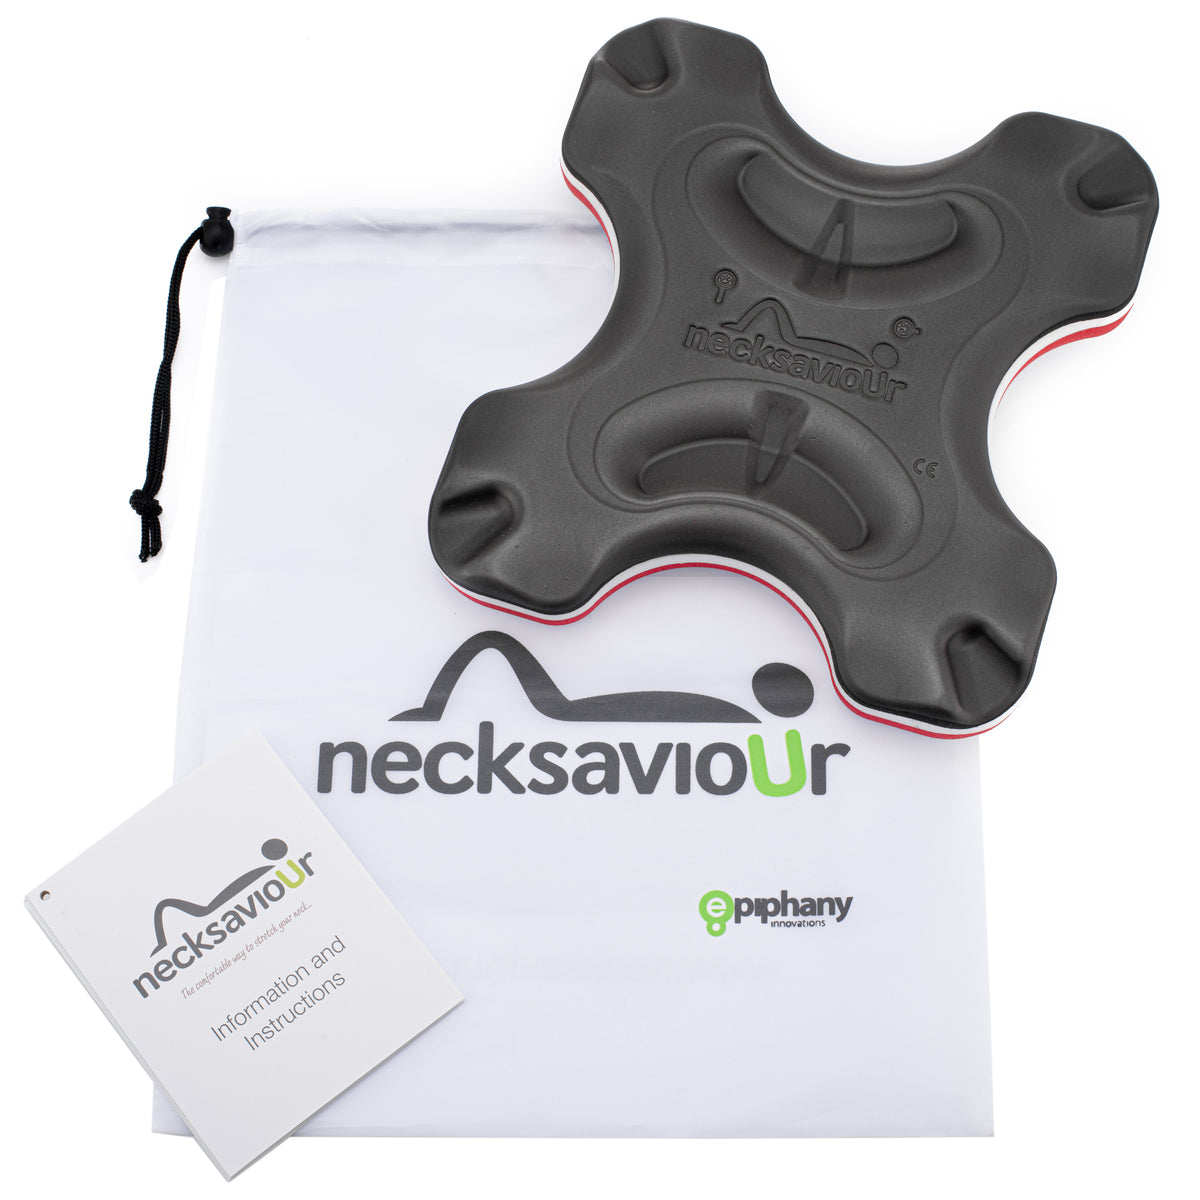 Necksaviour - Neck Ease Stretching Device – necksaviour